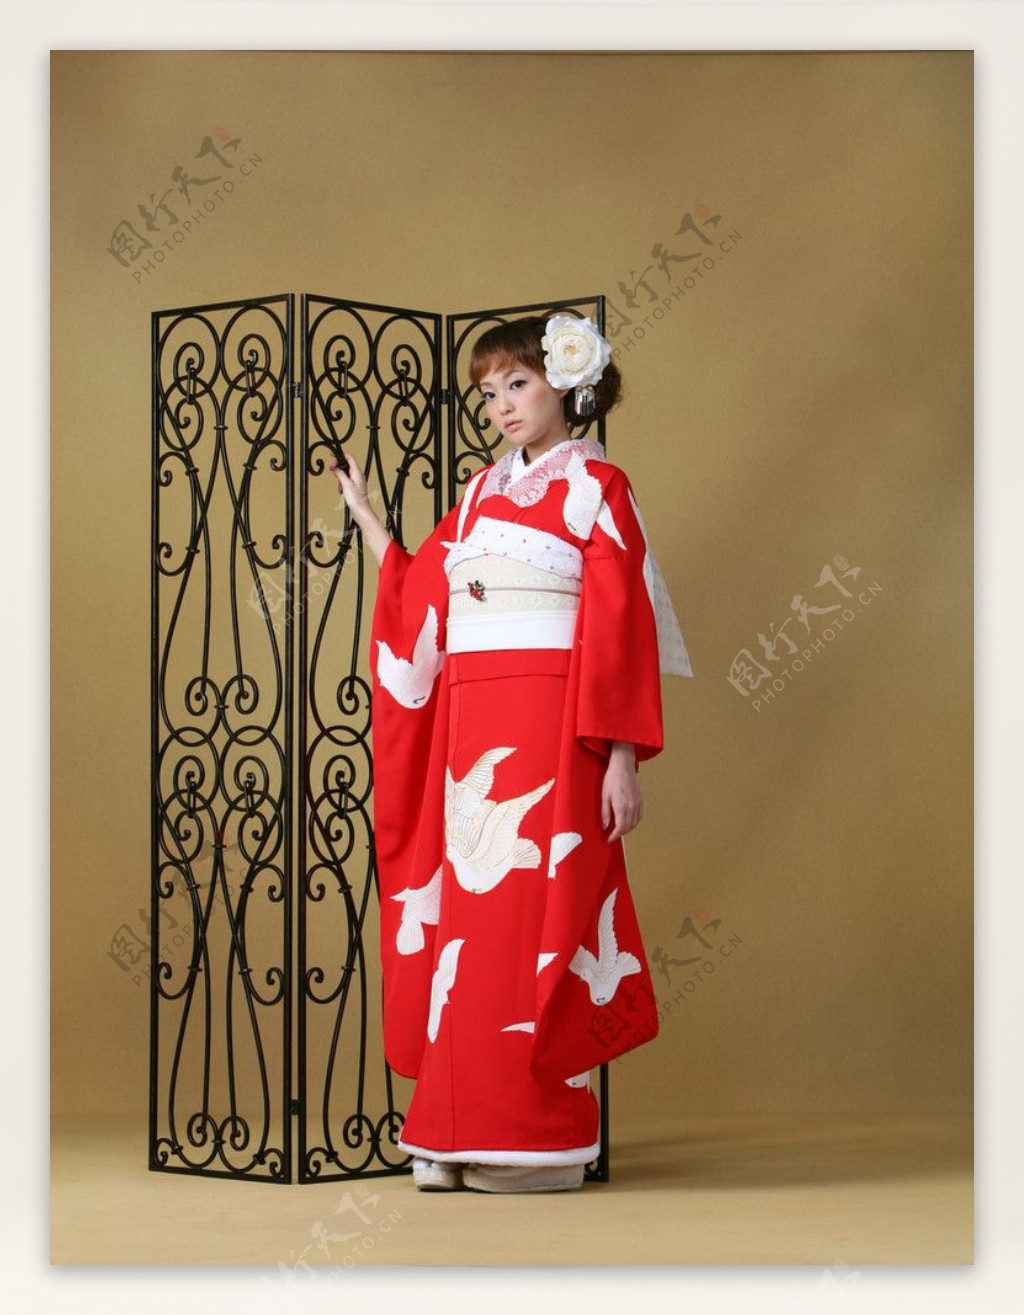 日本少女模特和服展示图片